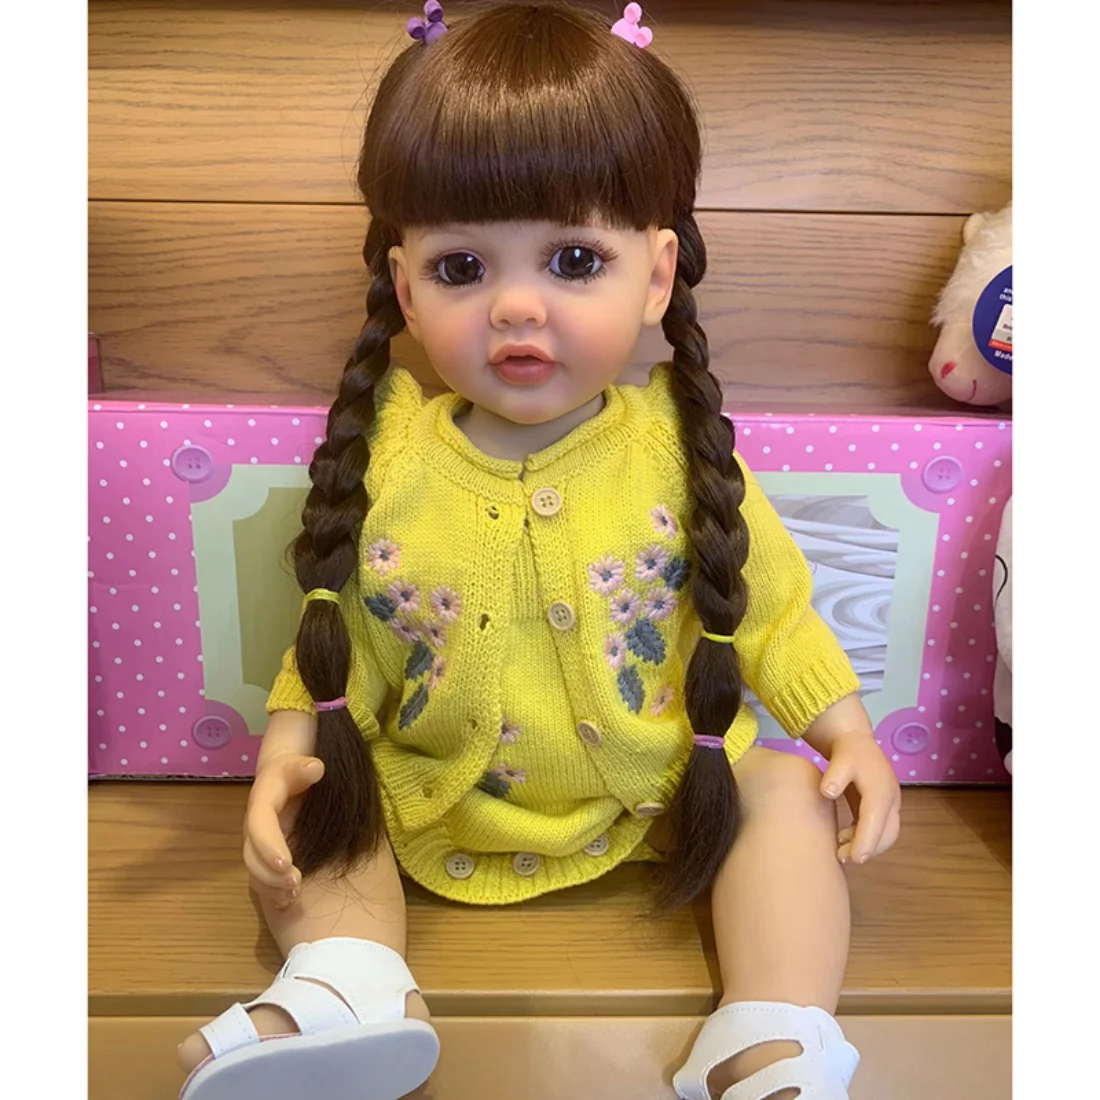 55 СМ Вече е Завършен Рисувани Възстановената Миличка Момиче Кукла Бети Принцеса Момиче Кукла Ръчно Рисувани Кукла Подаръци Играчки за Деца Изображение 0 